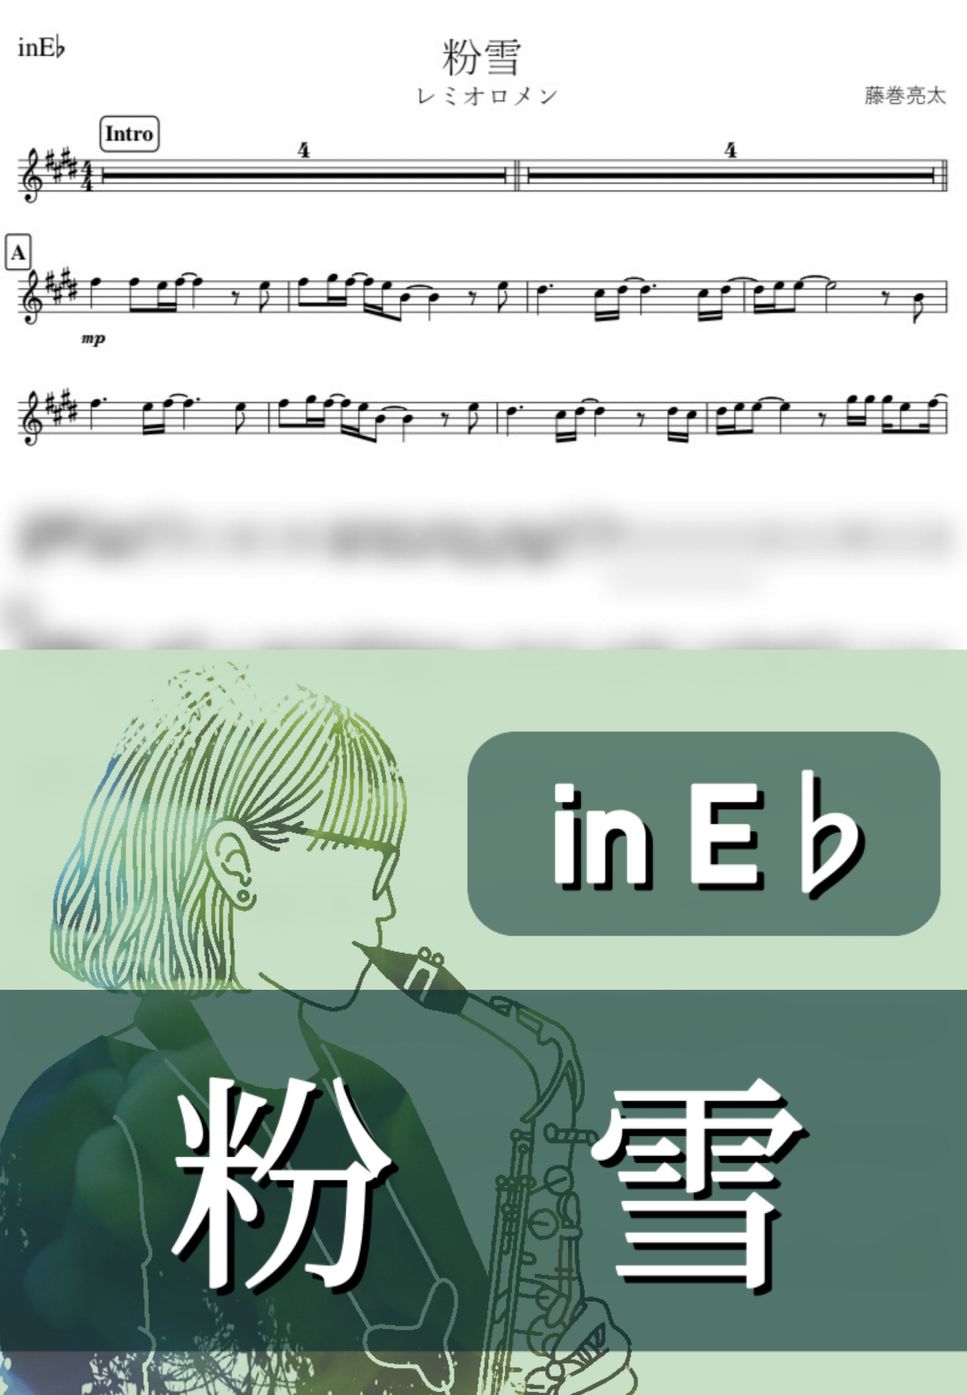 レミオロメン - 粉雪 (E♭) by kanamusic